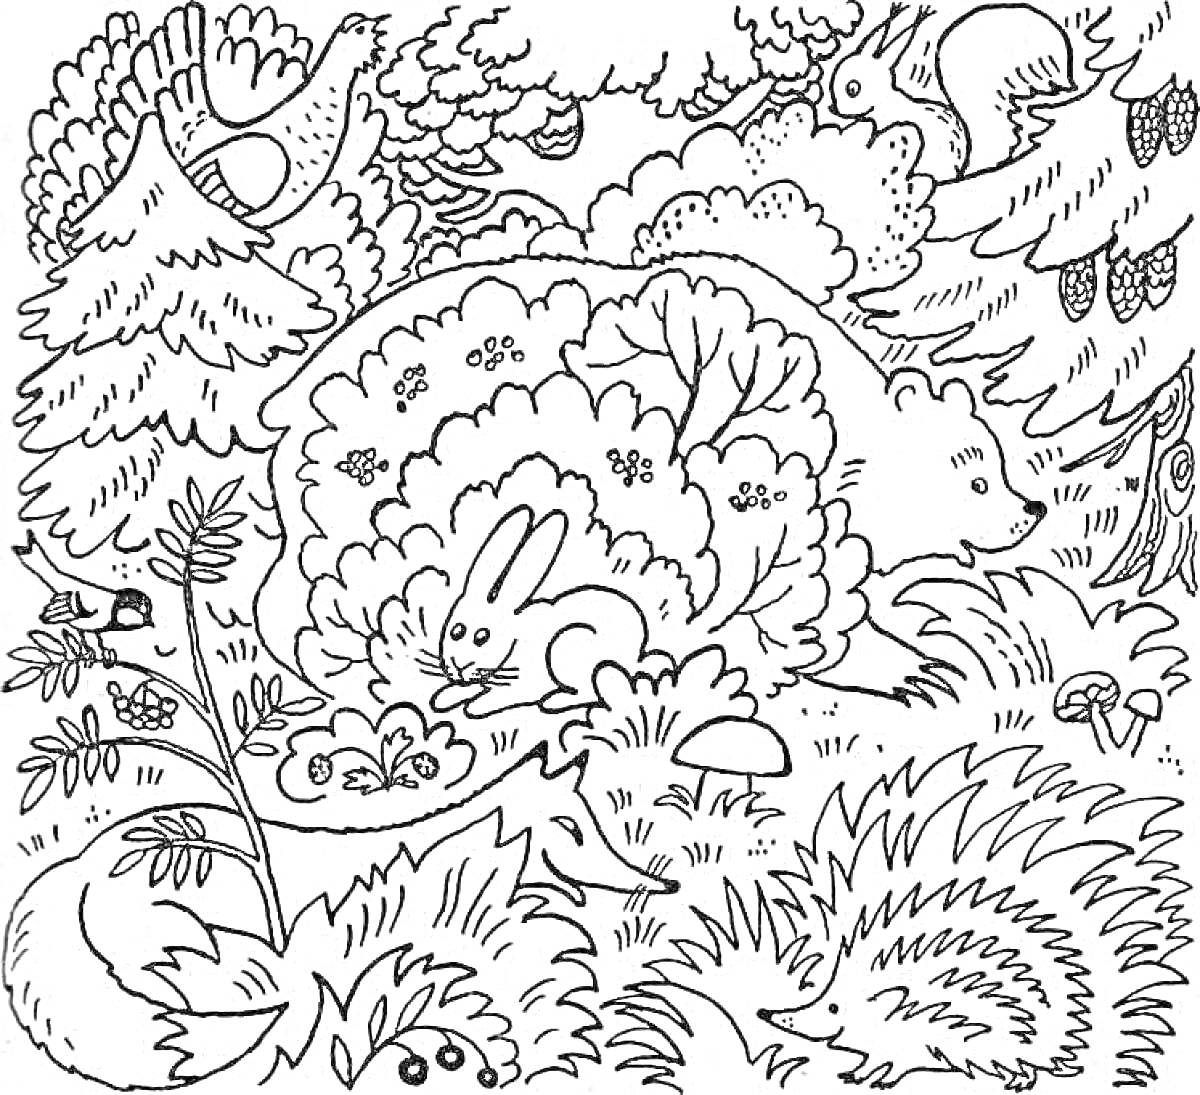 Раскраска Лесная сцена с зайцем, медведем, ежом, лисицей, белкой, птицами, деревьями и кустами